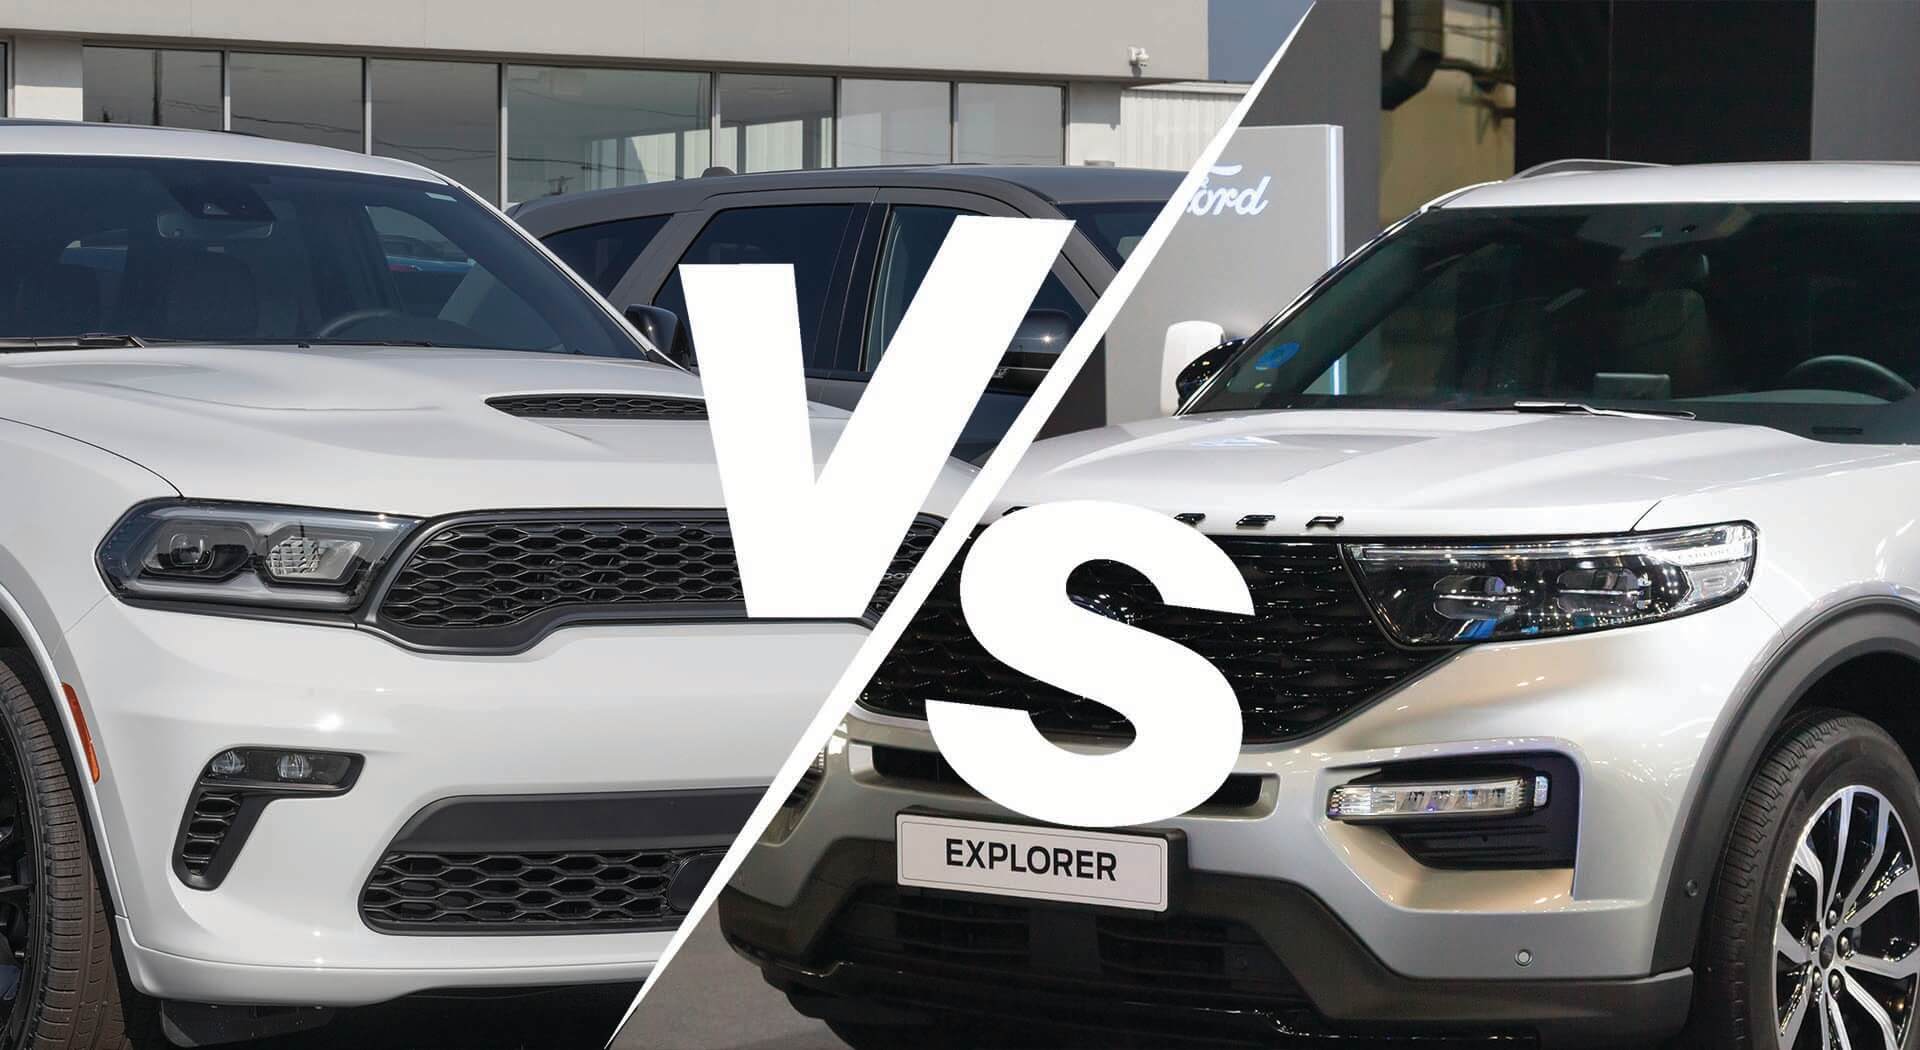 Ford Explorer vs. Dodge Durango